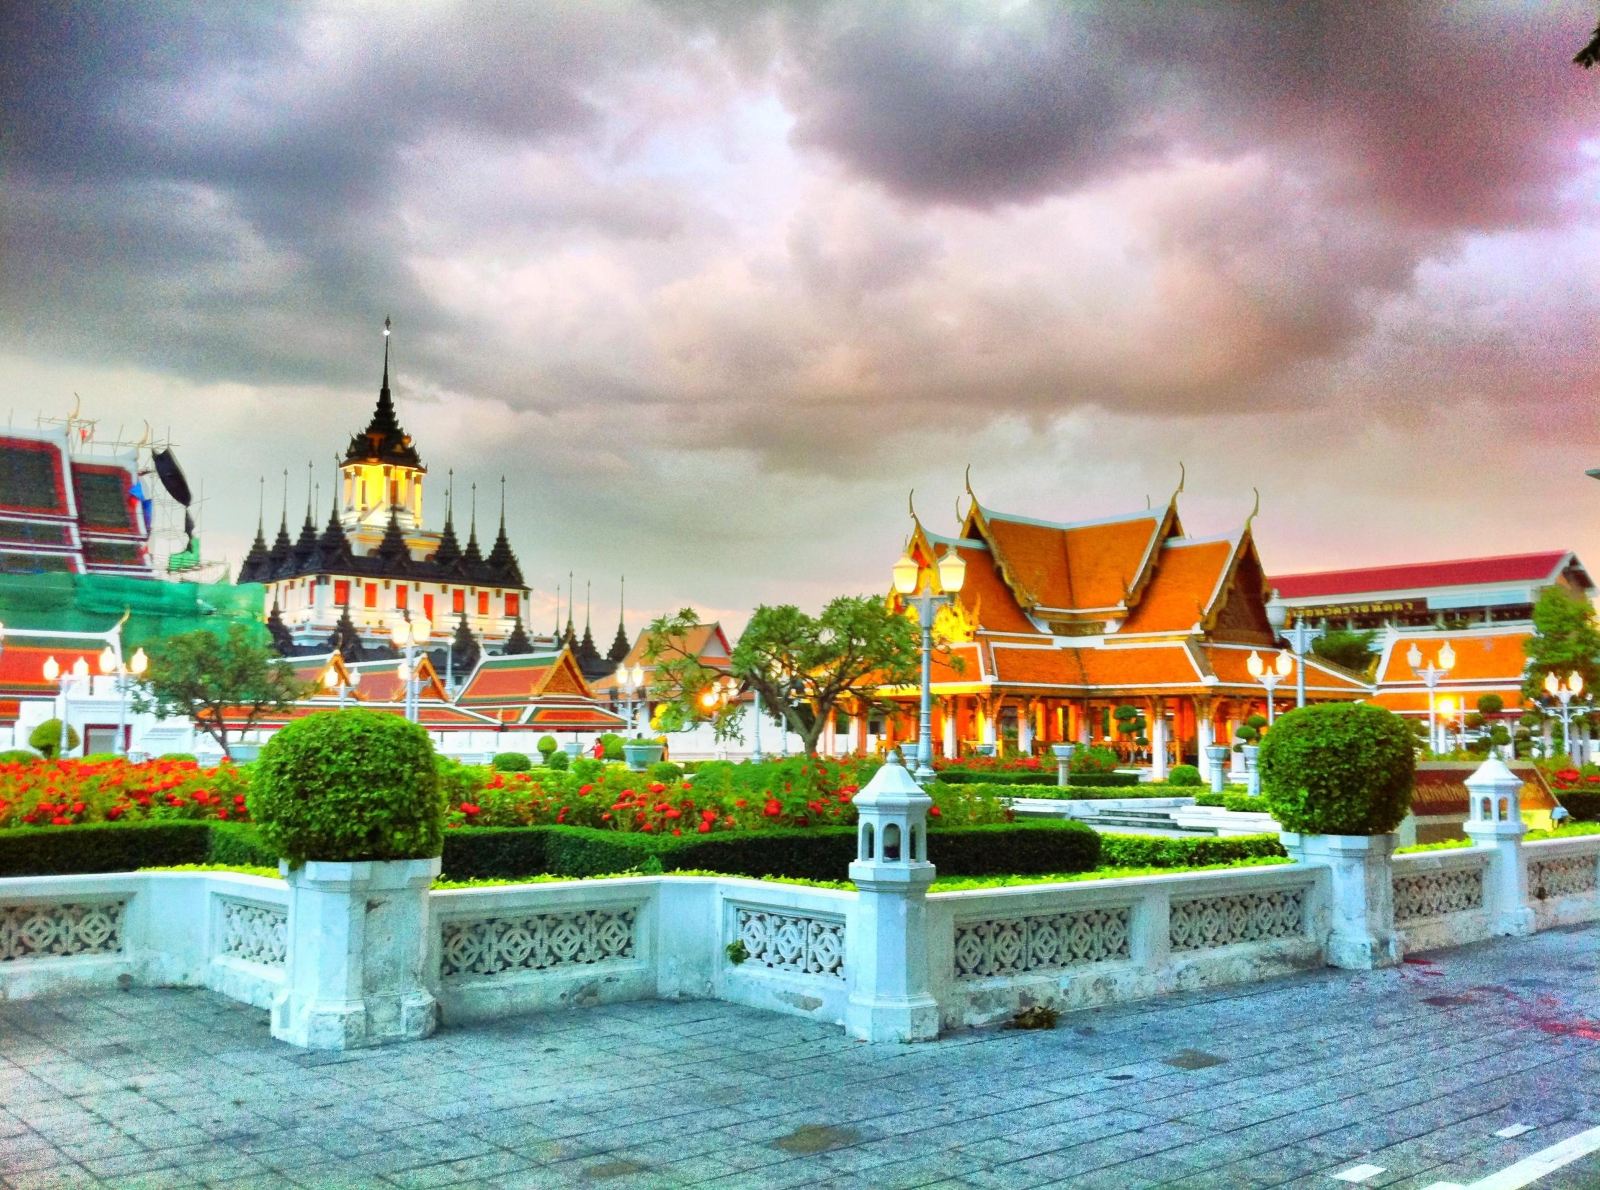 泰国曼谷 金属宫殿 Loha Prasart